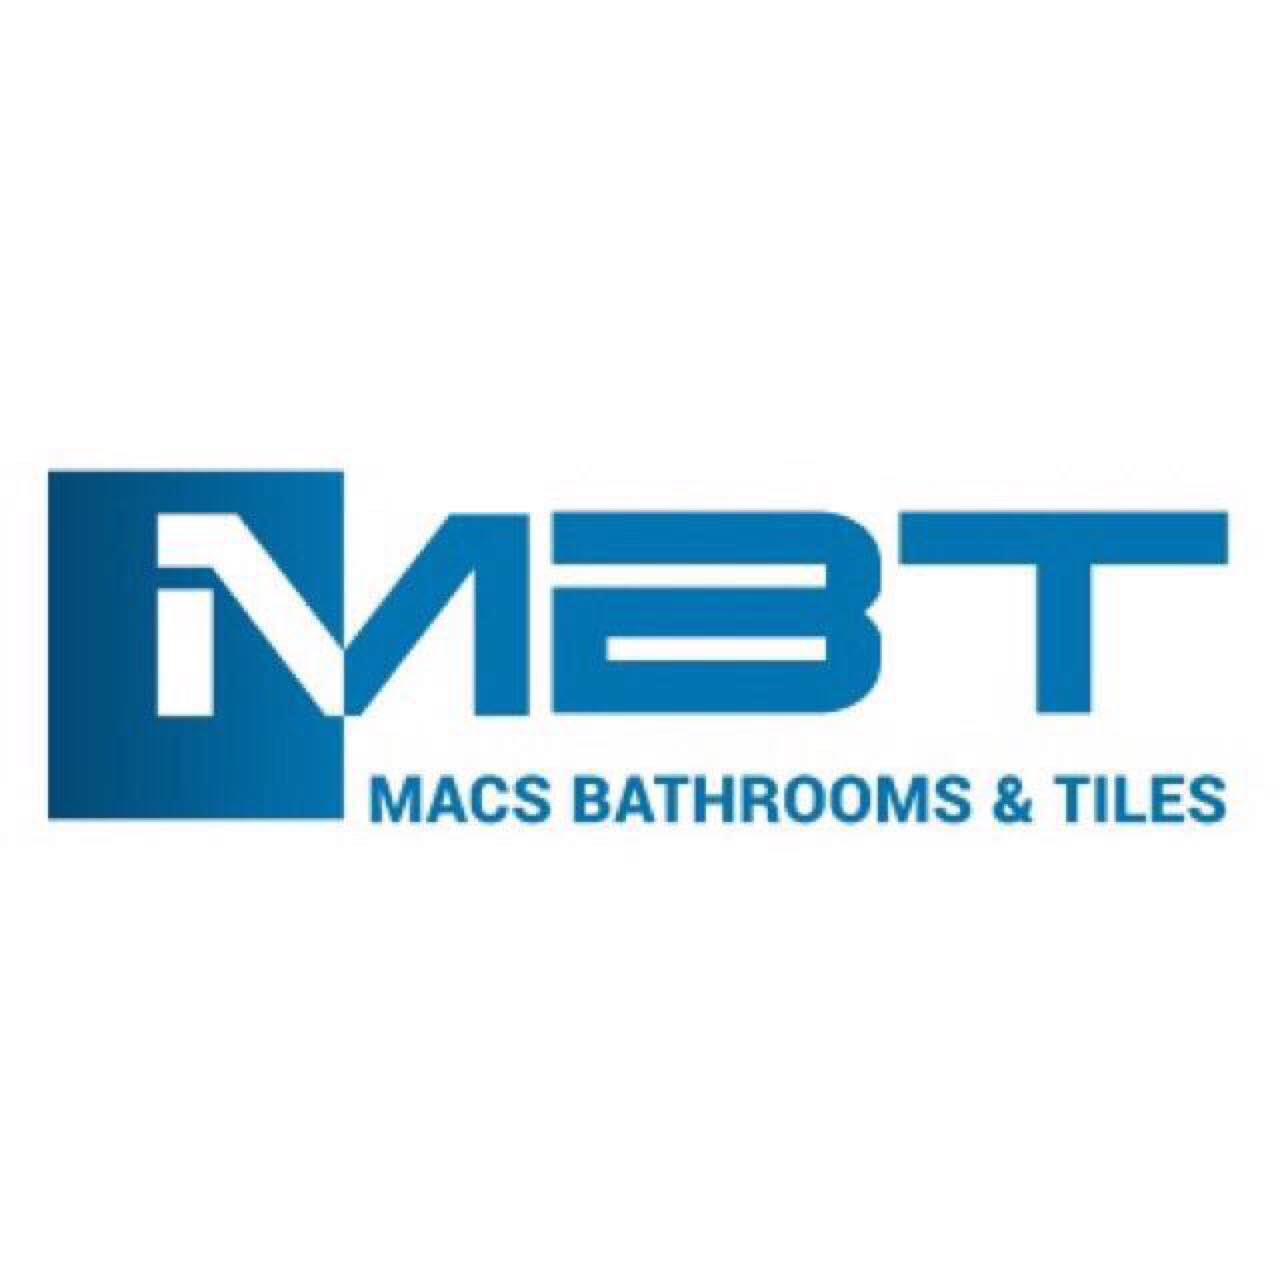 Macs Bathroom Supplies Ltd